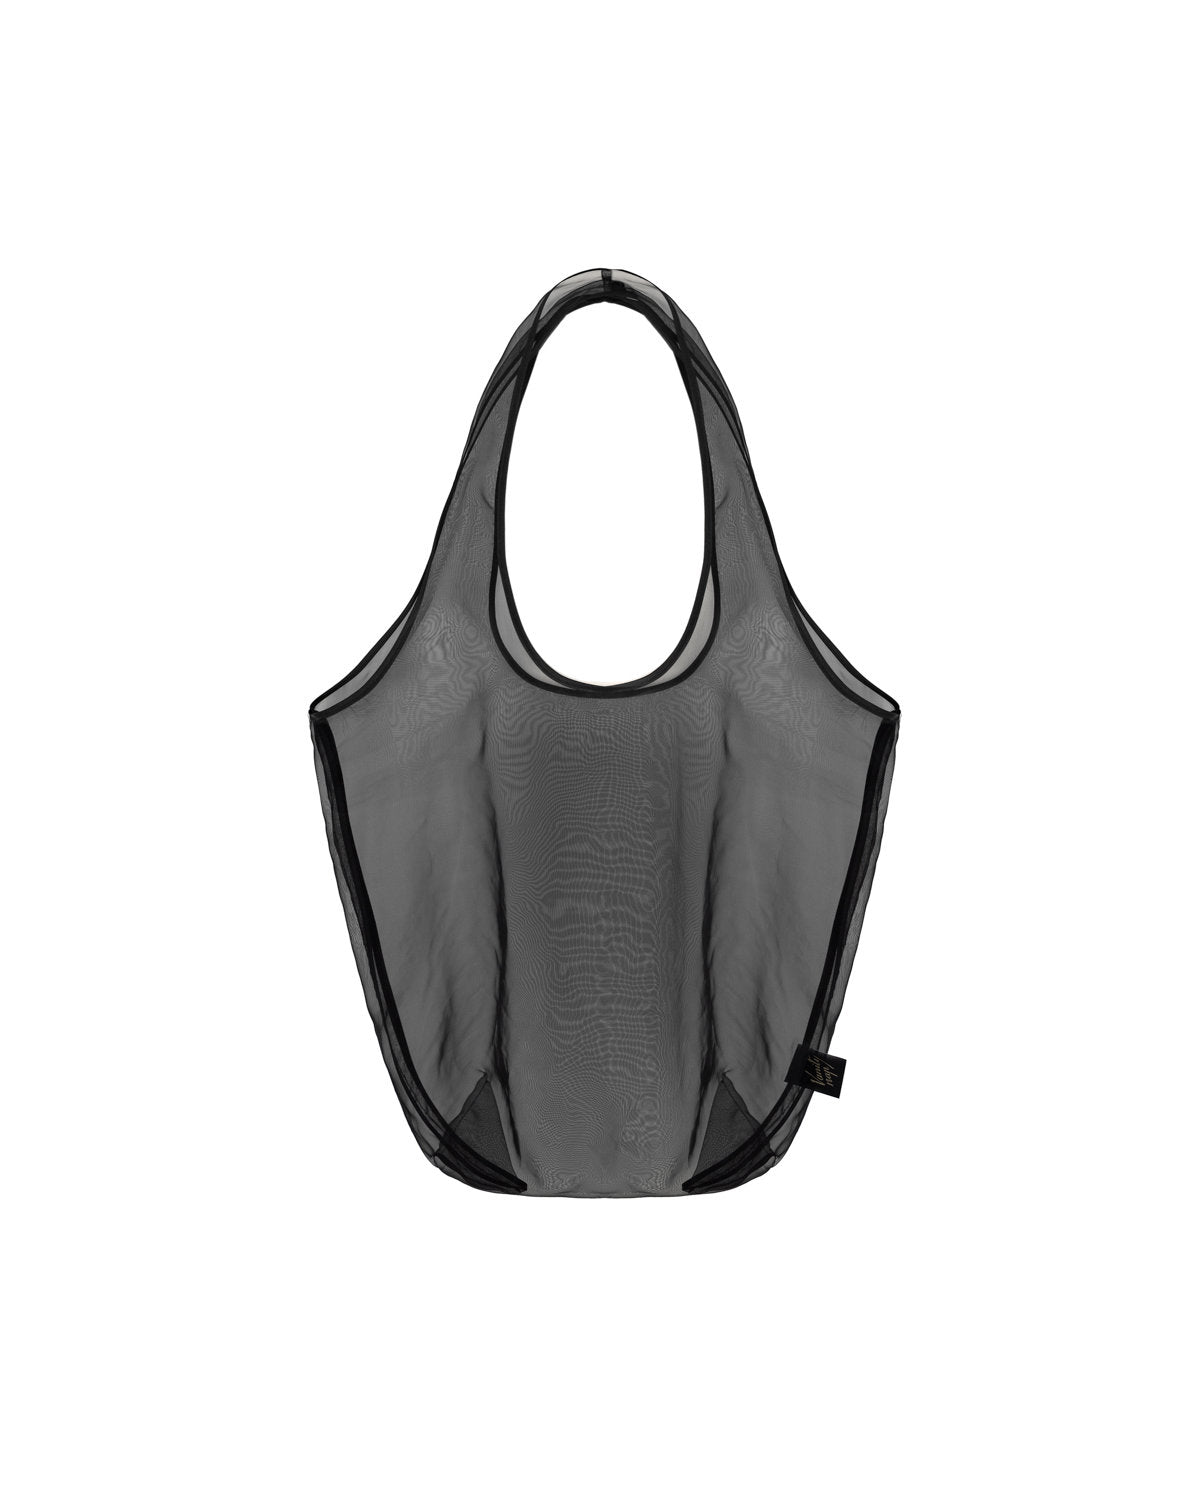 Organza shopper bag in black